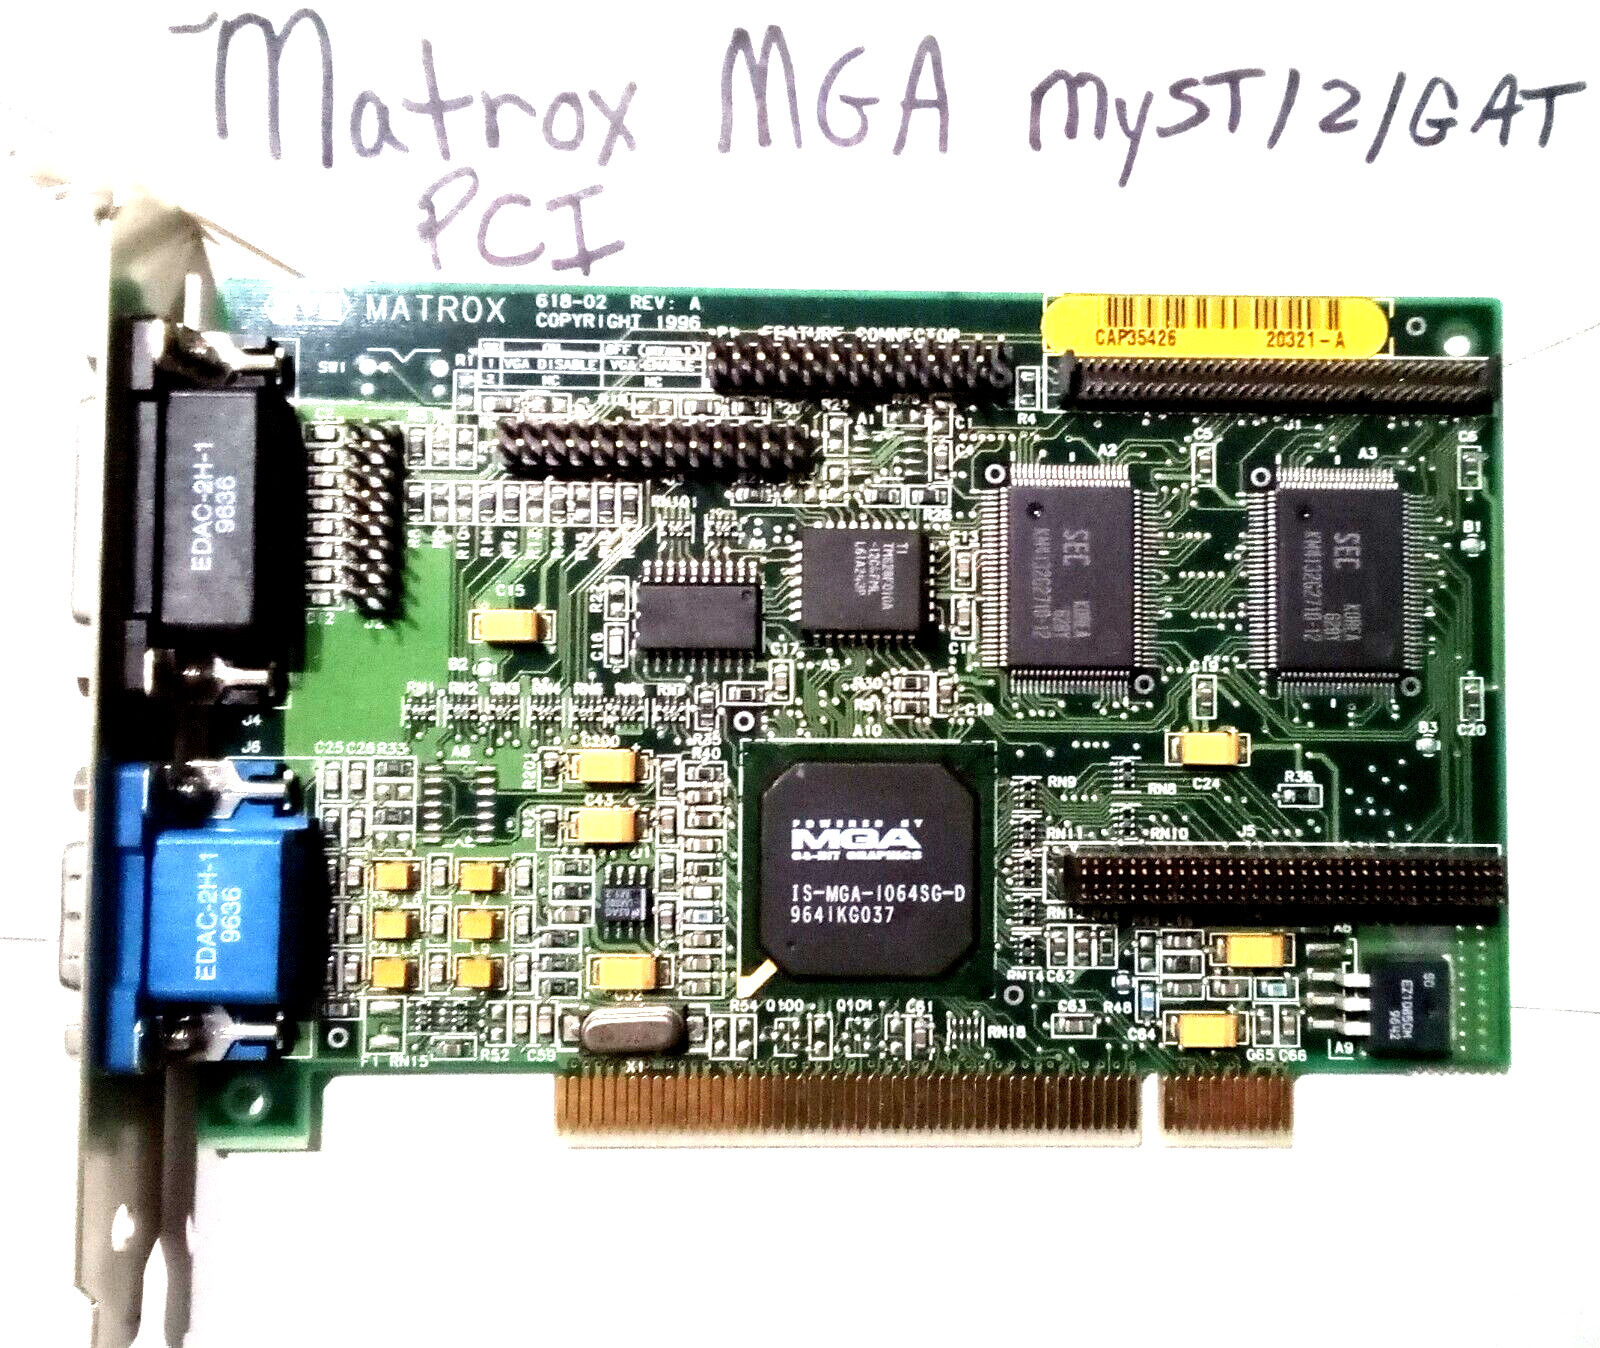 Rare Matrox Mystique MGA-1064SG-D 2MB PCI Video Card, MGA-MYST